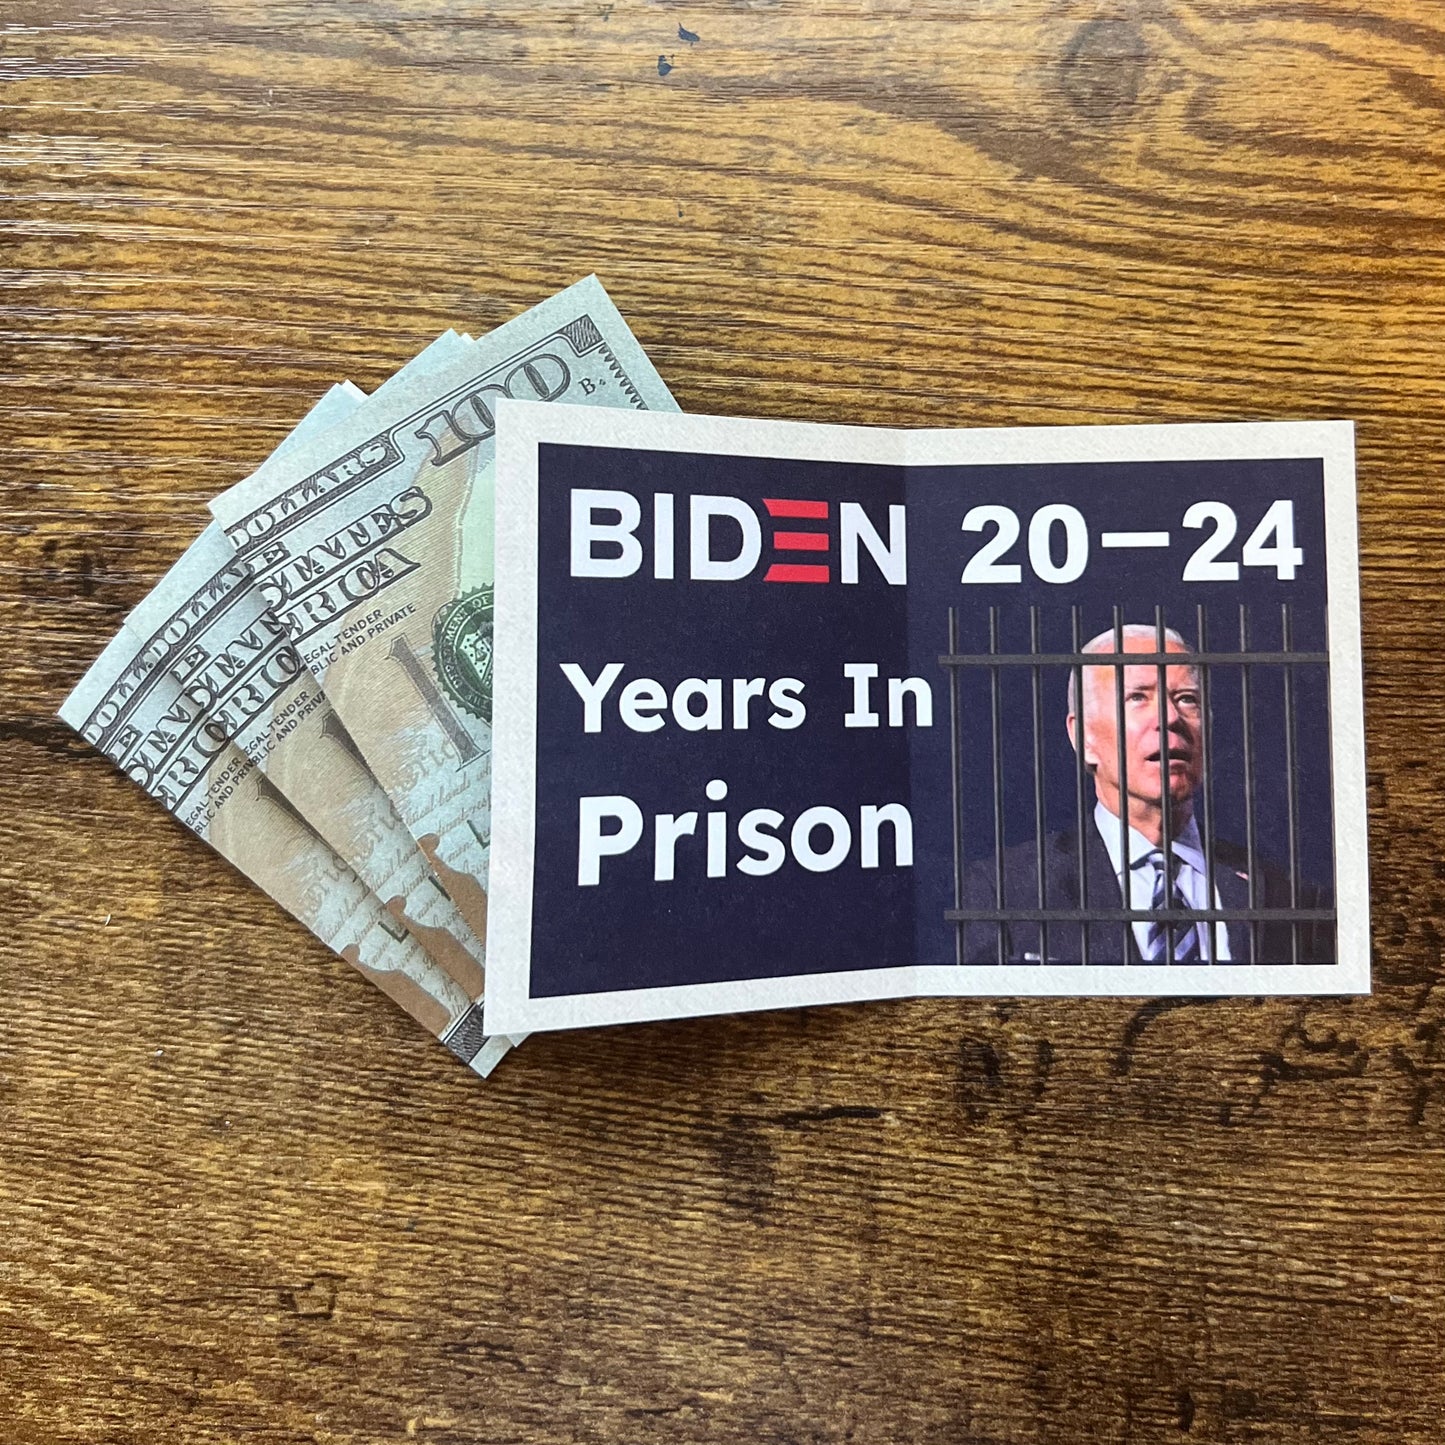 Biden 20-24 Years in Prison Bills